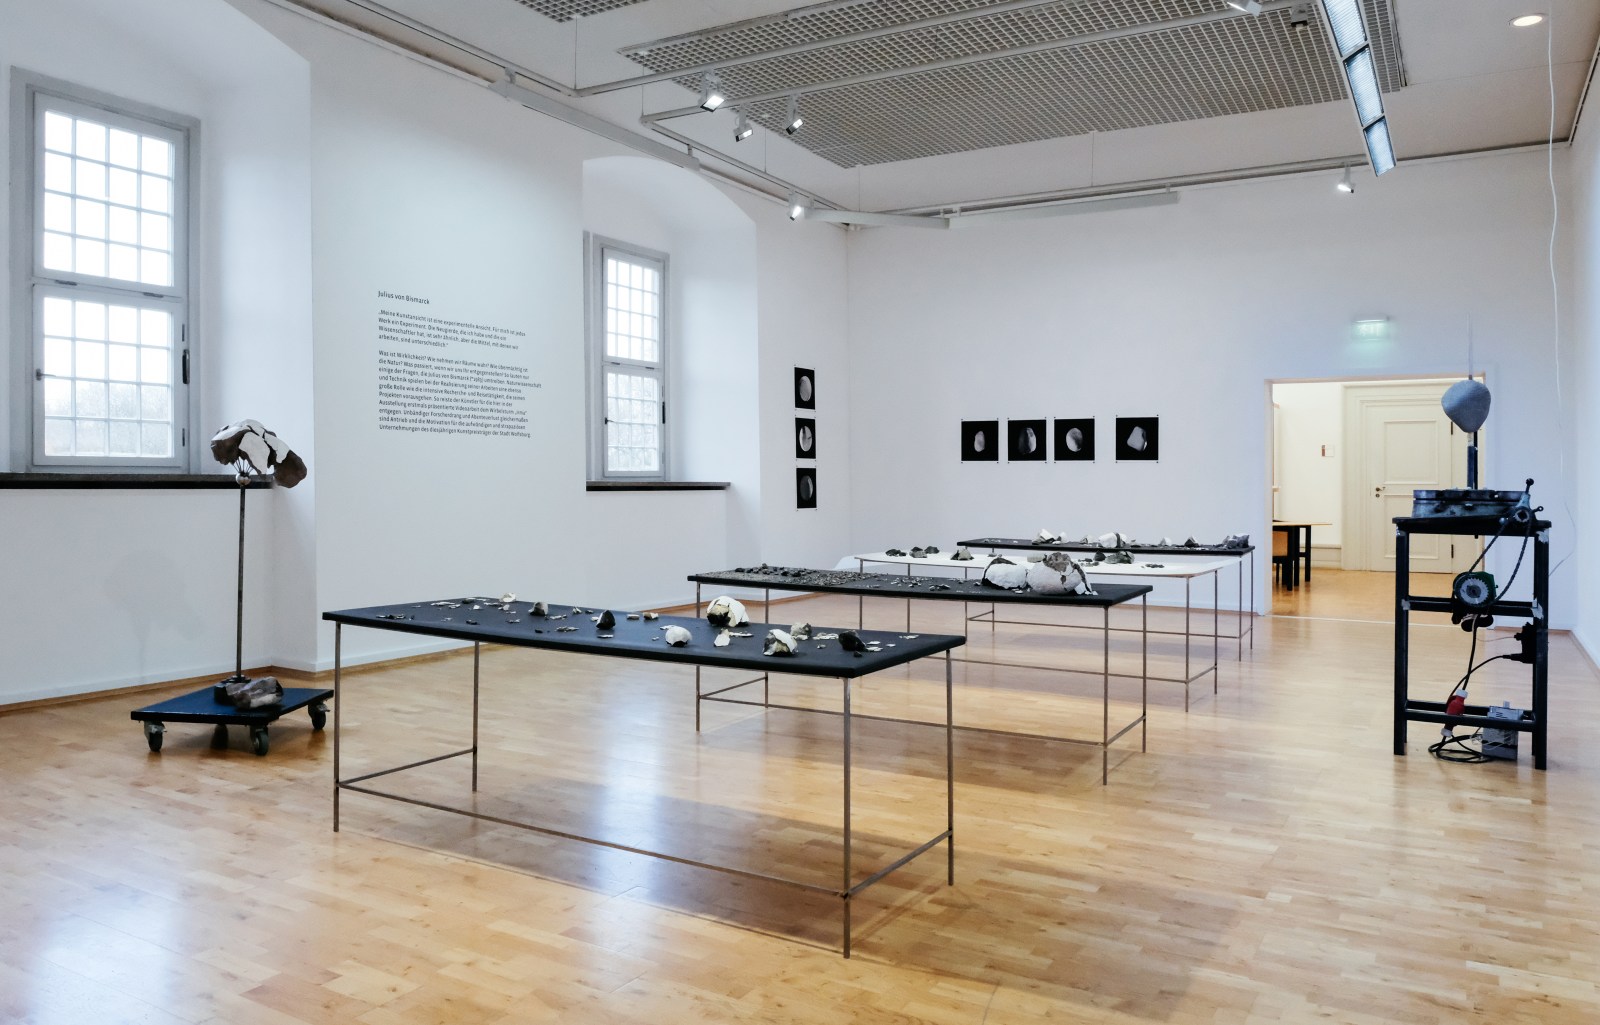 <div class="image_caption_container"><div class="image_caption"><p>Exhibition view: Julius von Bismarck, <strong>Gewaltenteilung</strong>, Städtische Galerie Wolfsburg (2017).</p><p>Photo © Janina Snatzke</p></div></div>